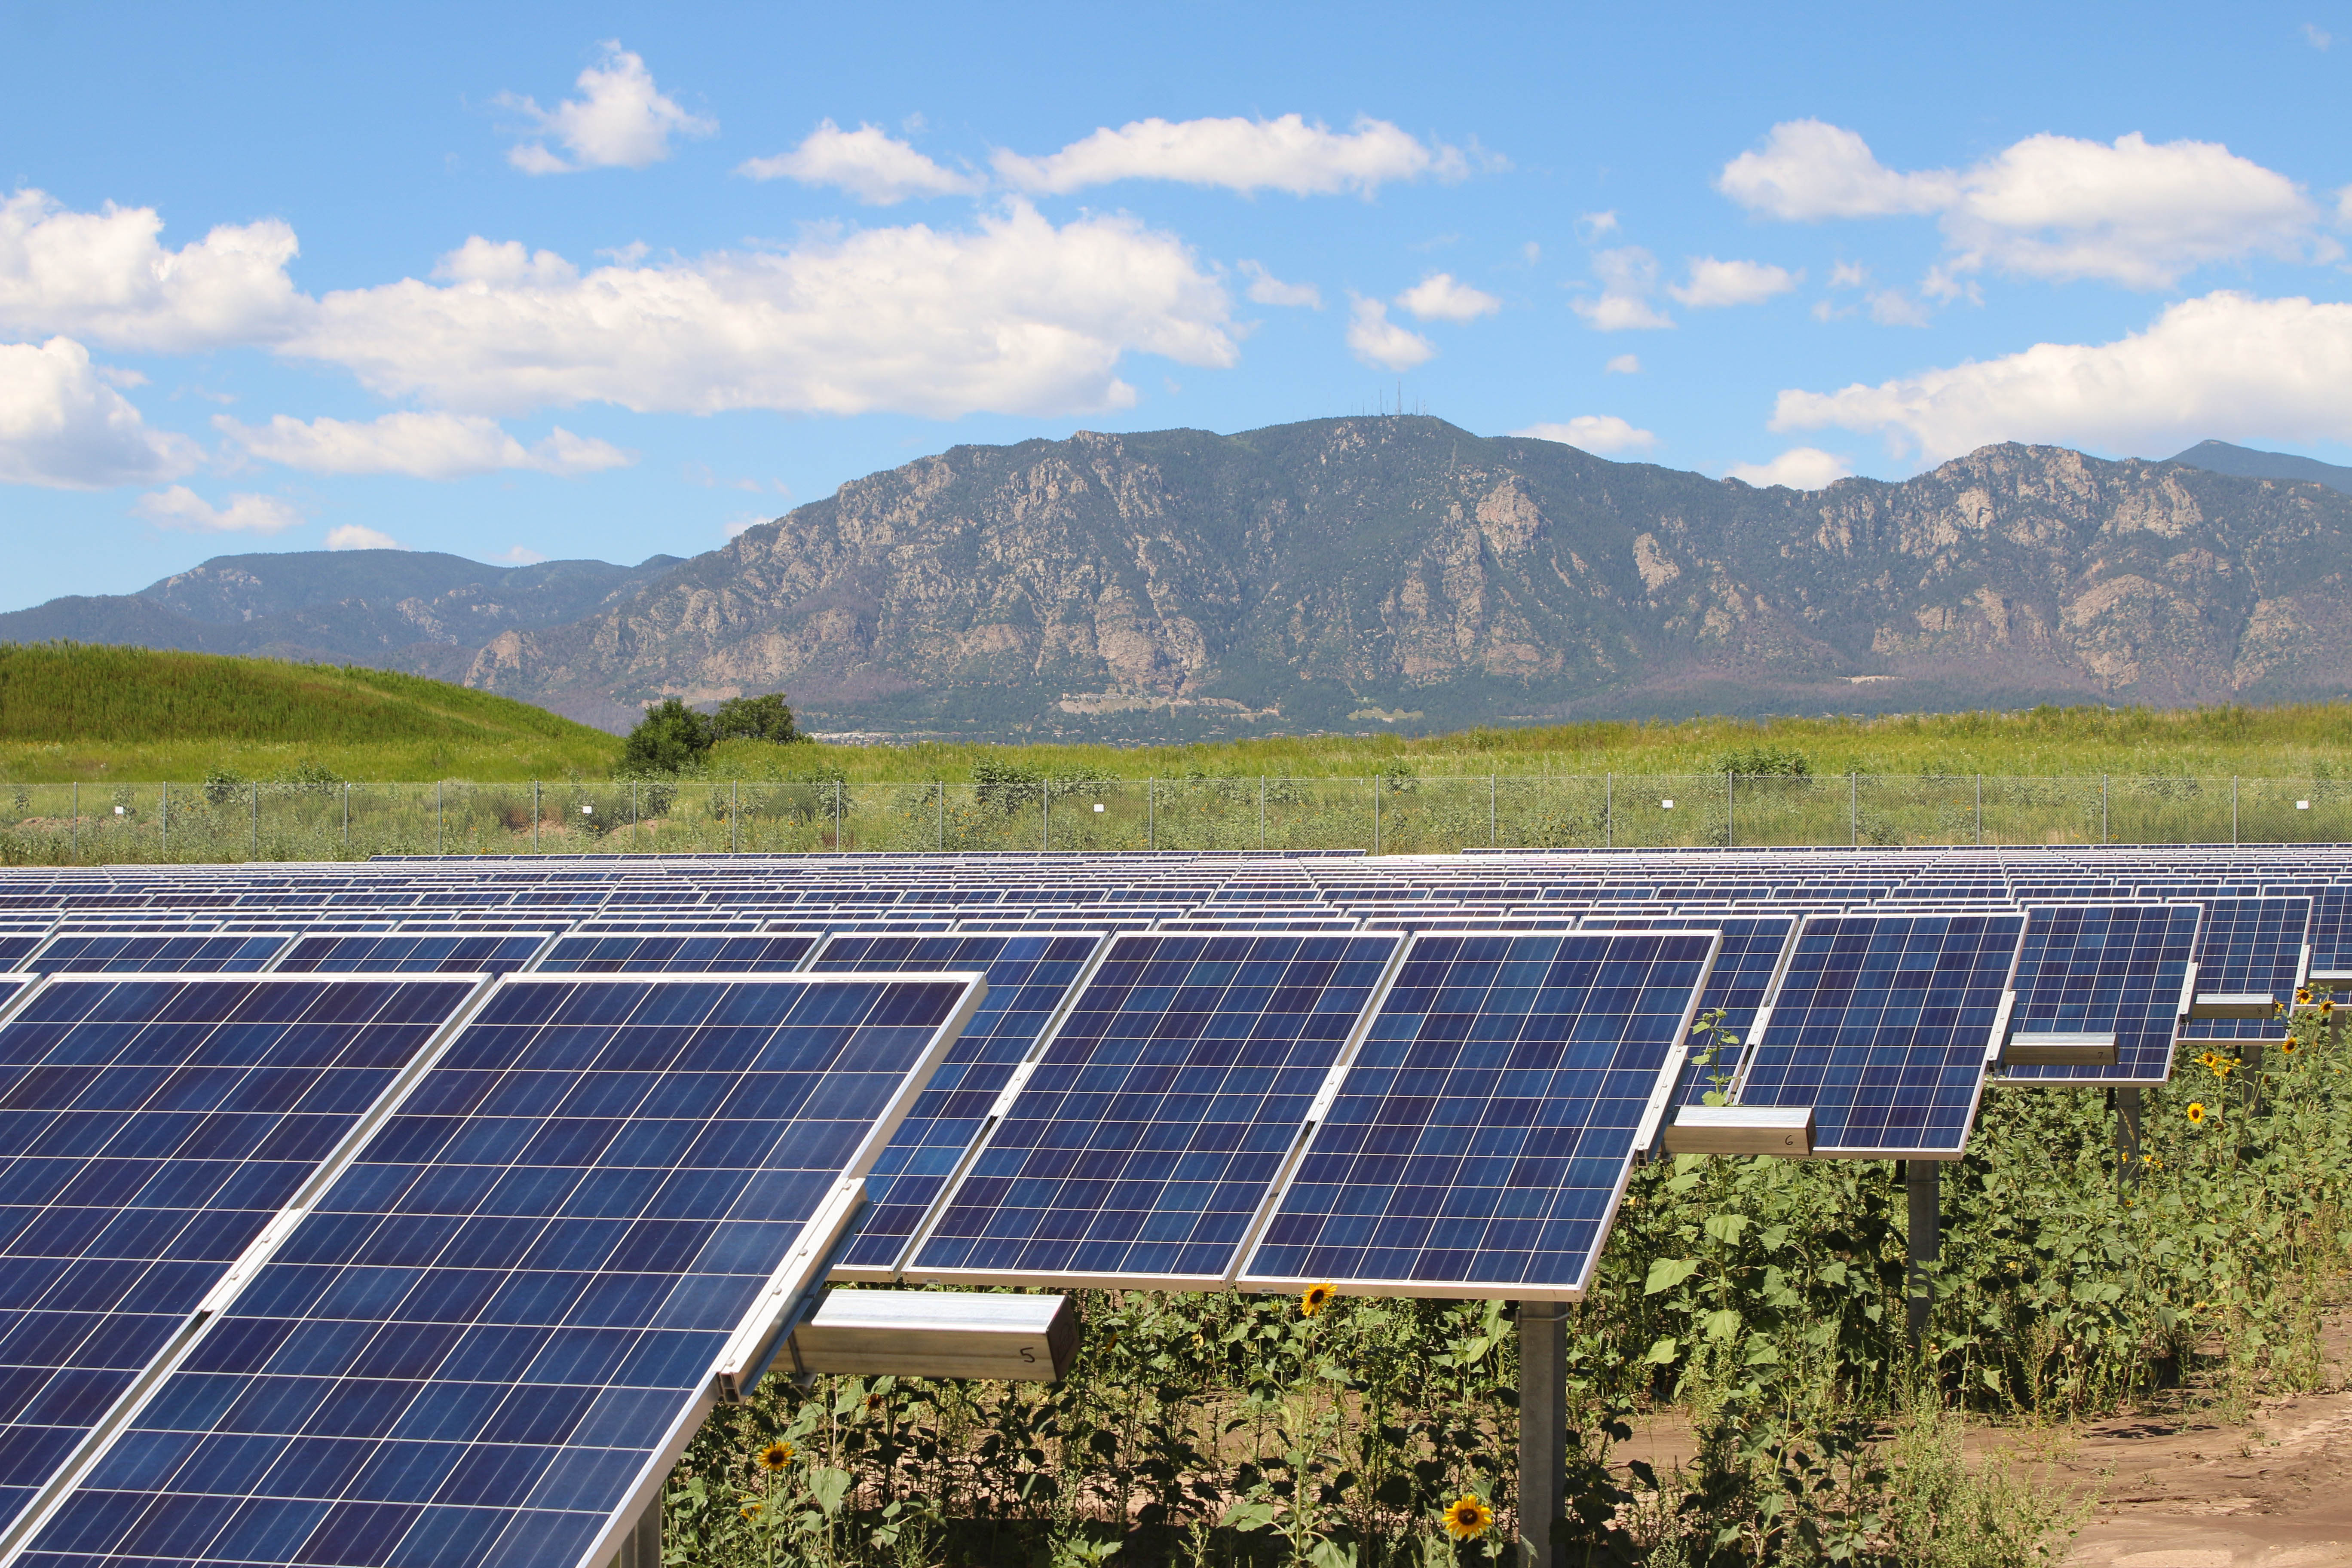 SunShare tops the 100 MW mark for community solar garden development